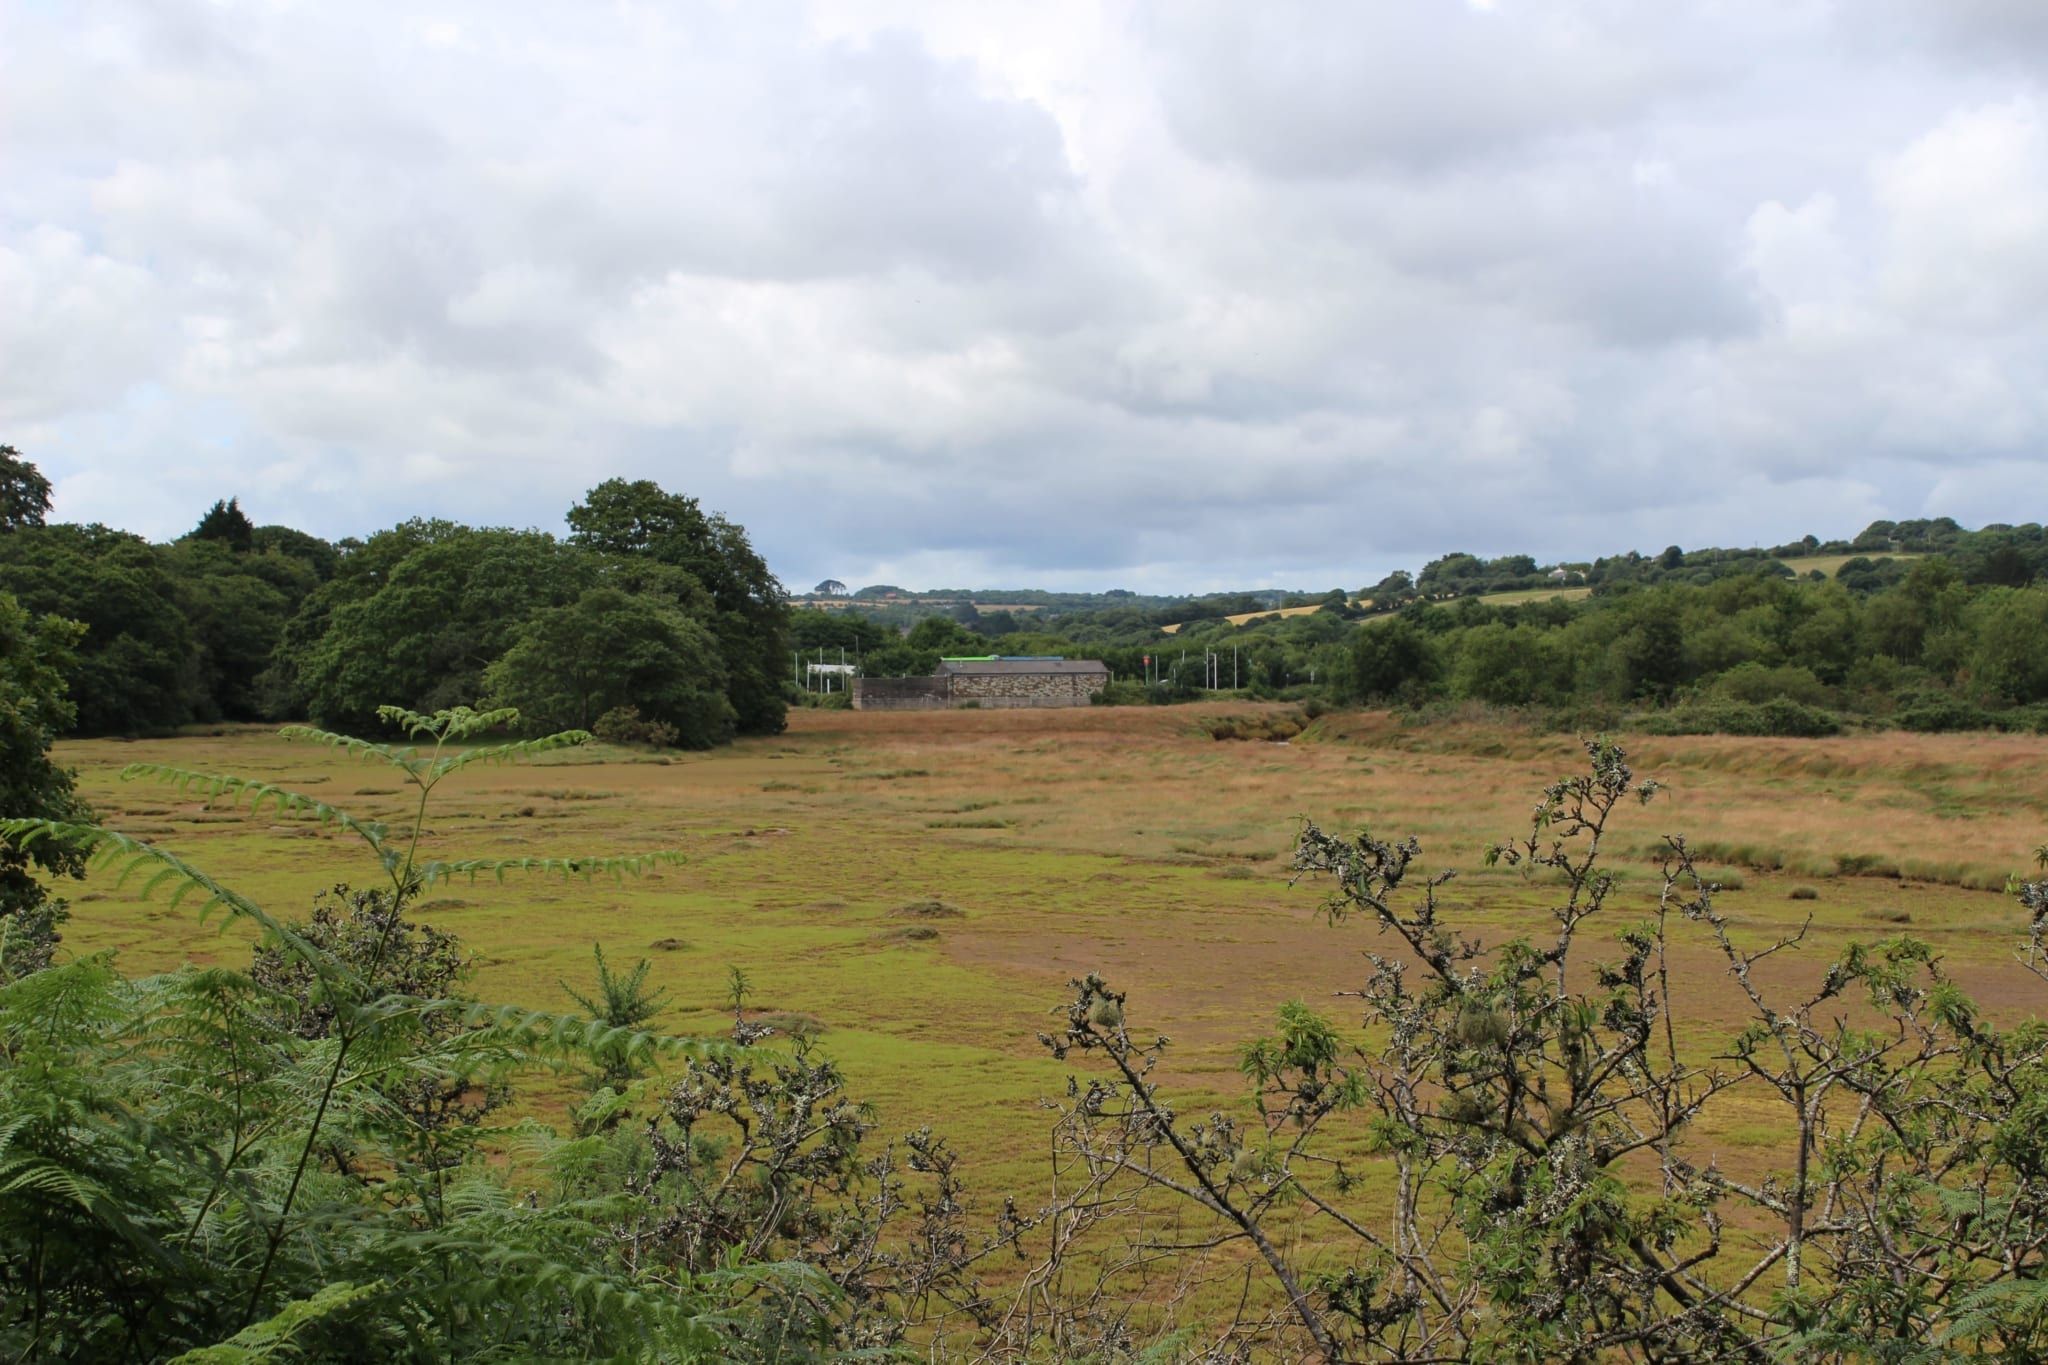 Plot of green land in Devoran by the creek